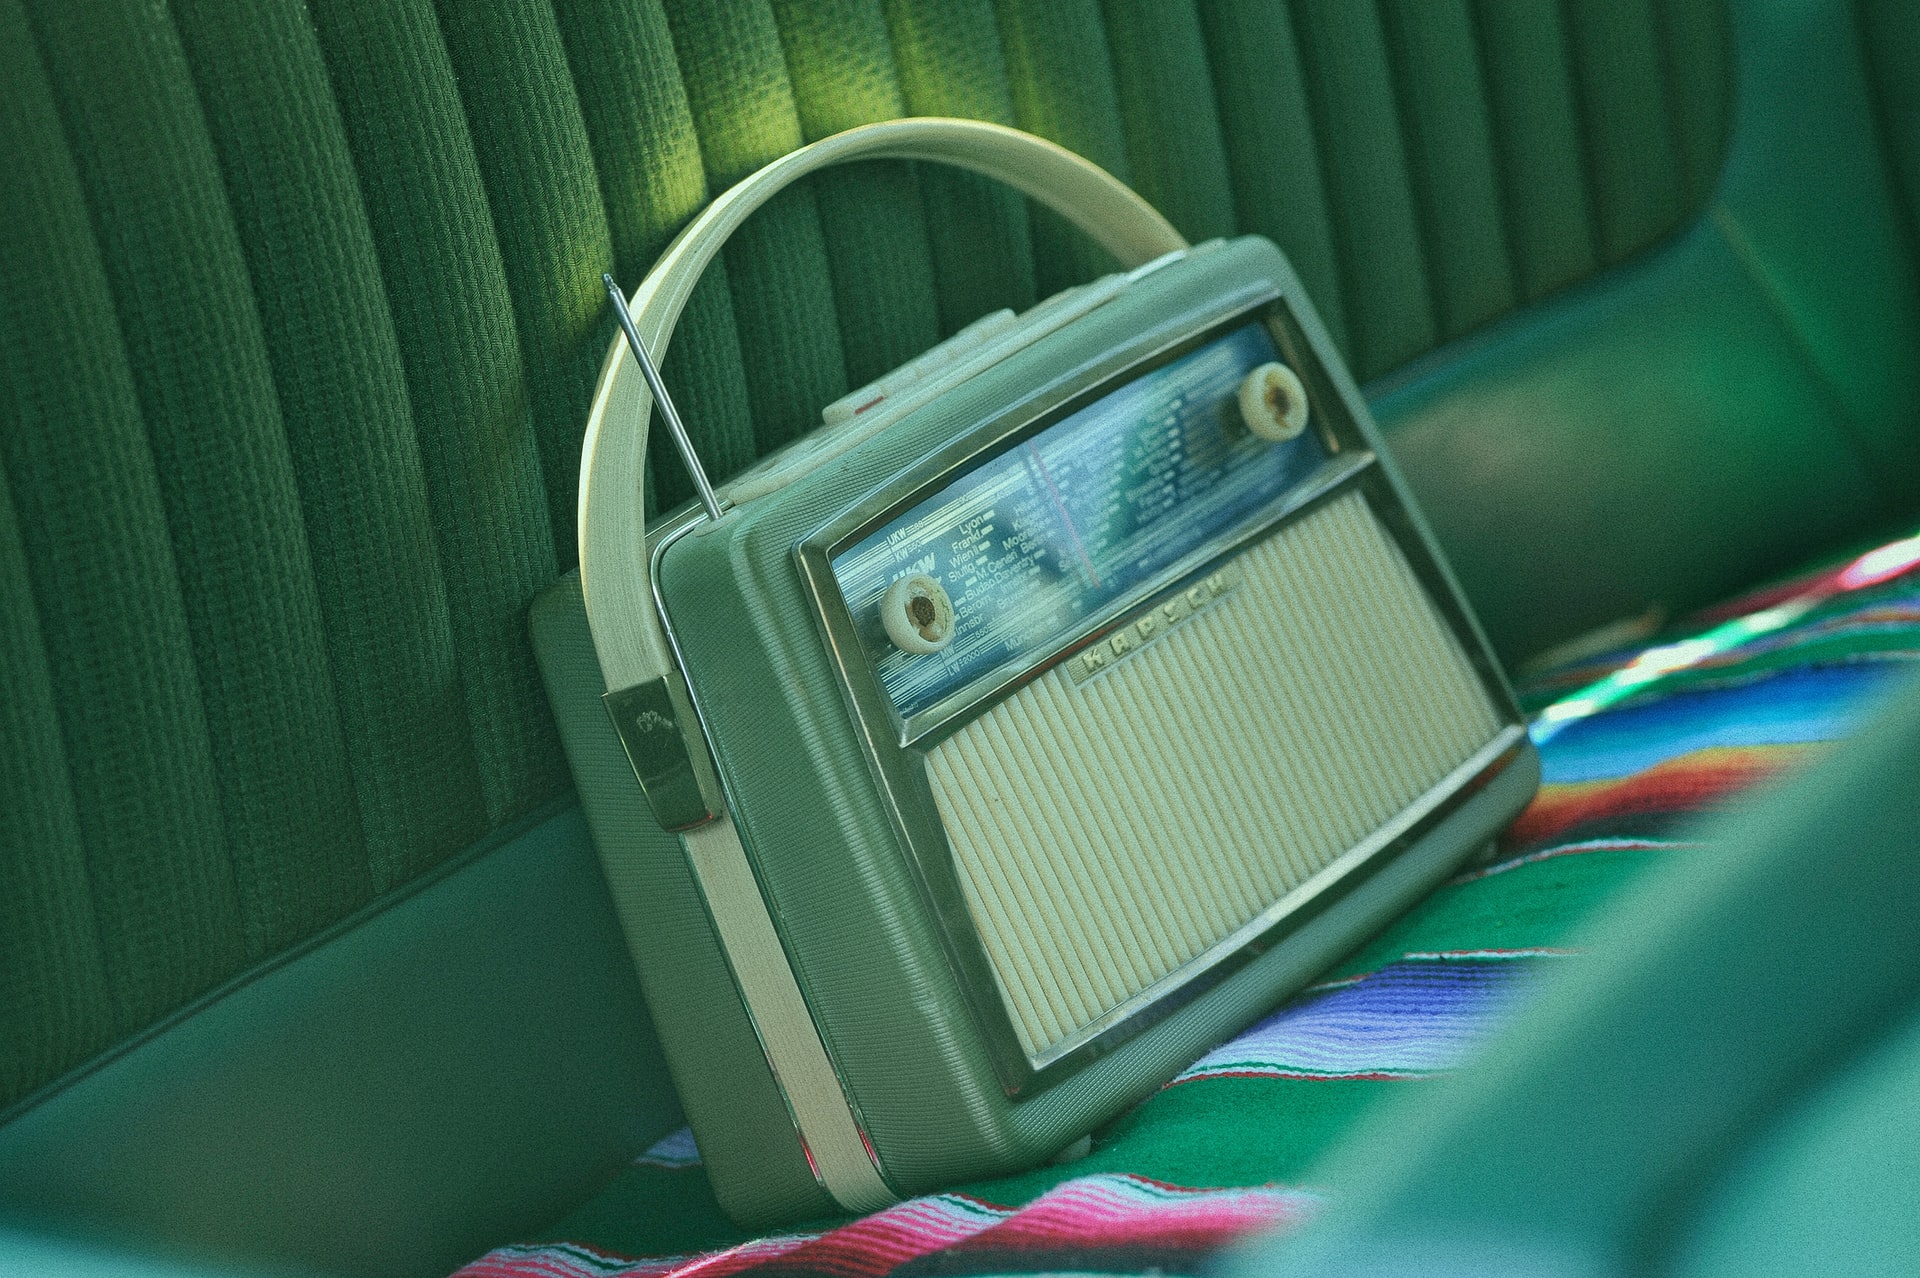 Image of old radio by Milivoj Kuhar on Unsplash